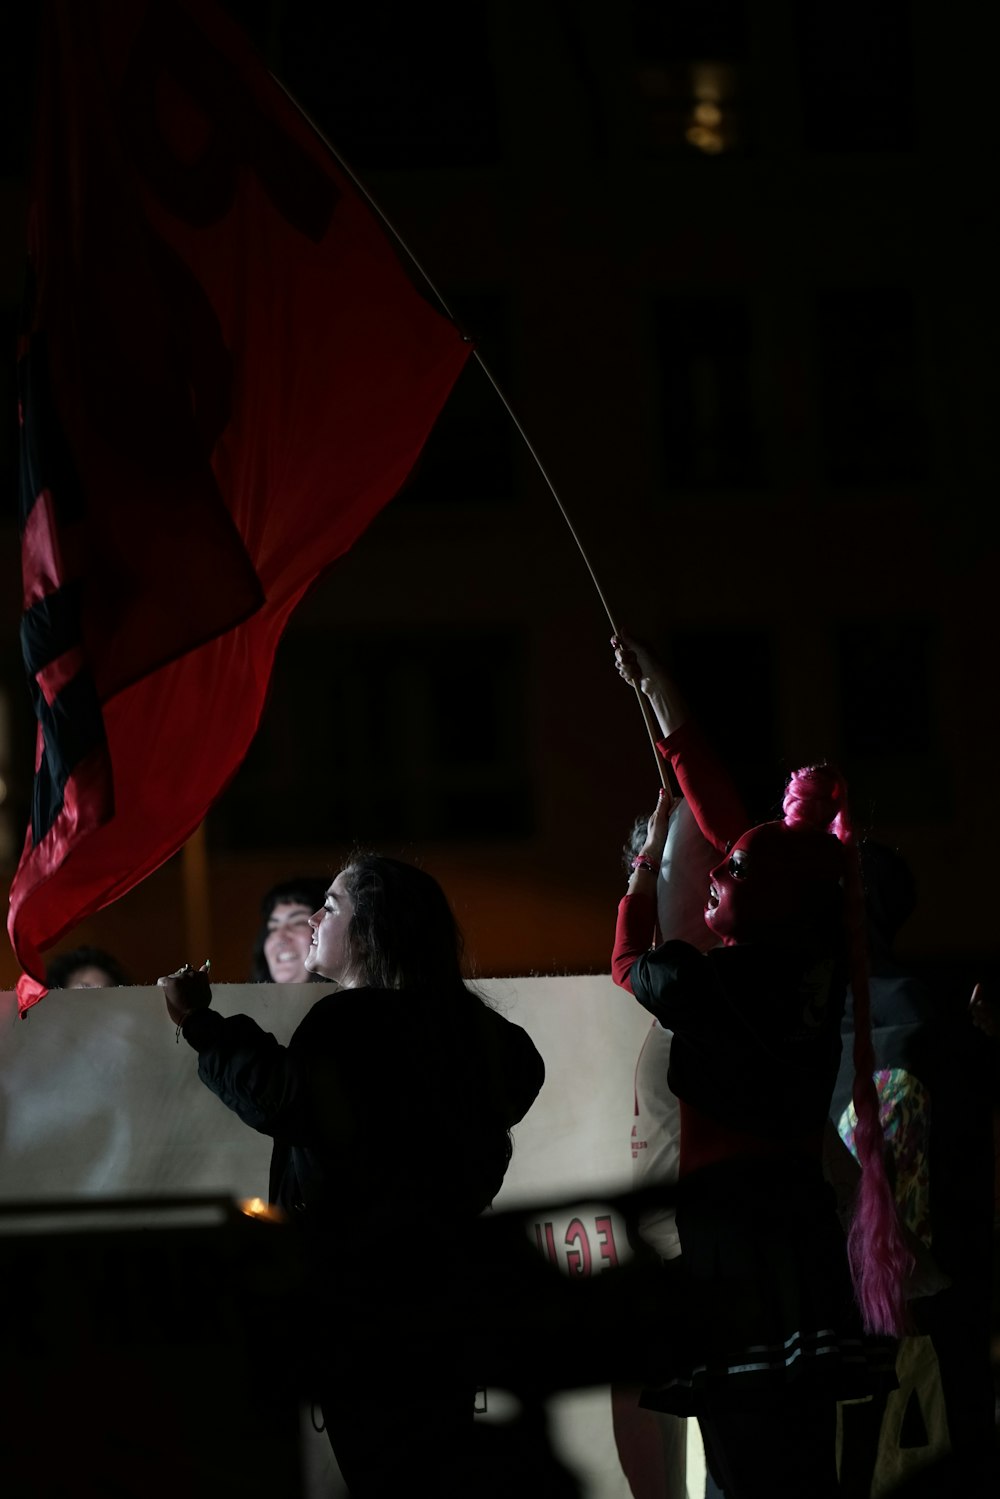 Eine Gruppe von Menschen, die eine rot-schwarze Flagge halten